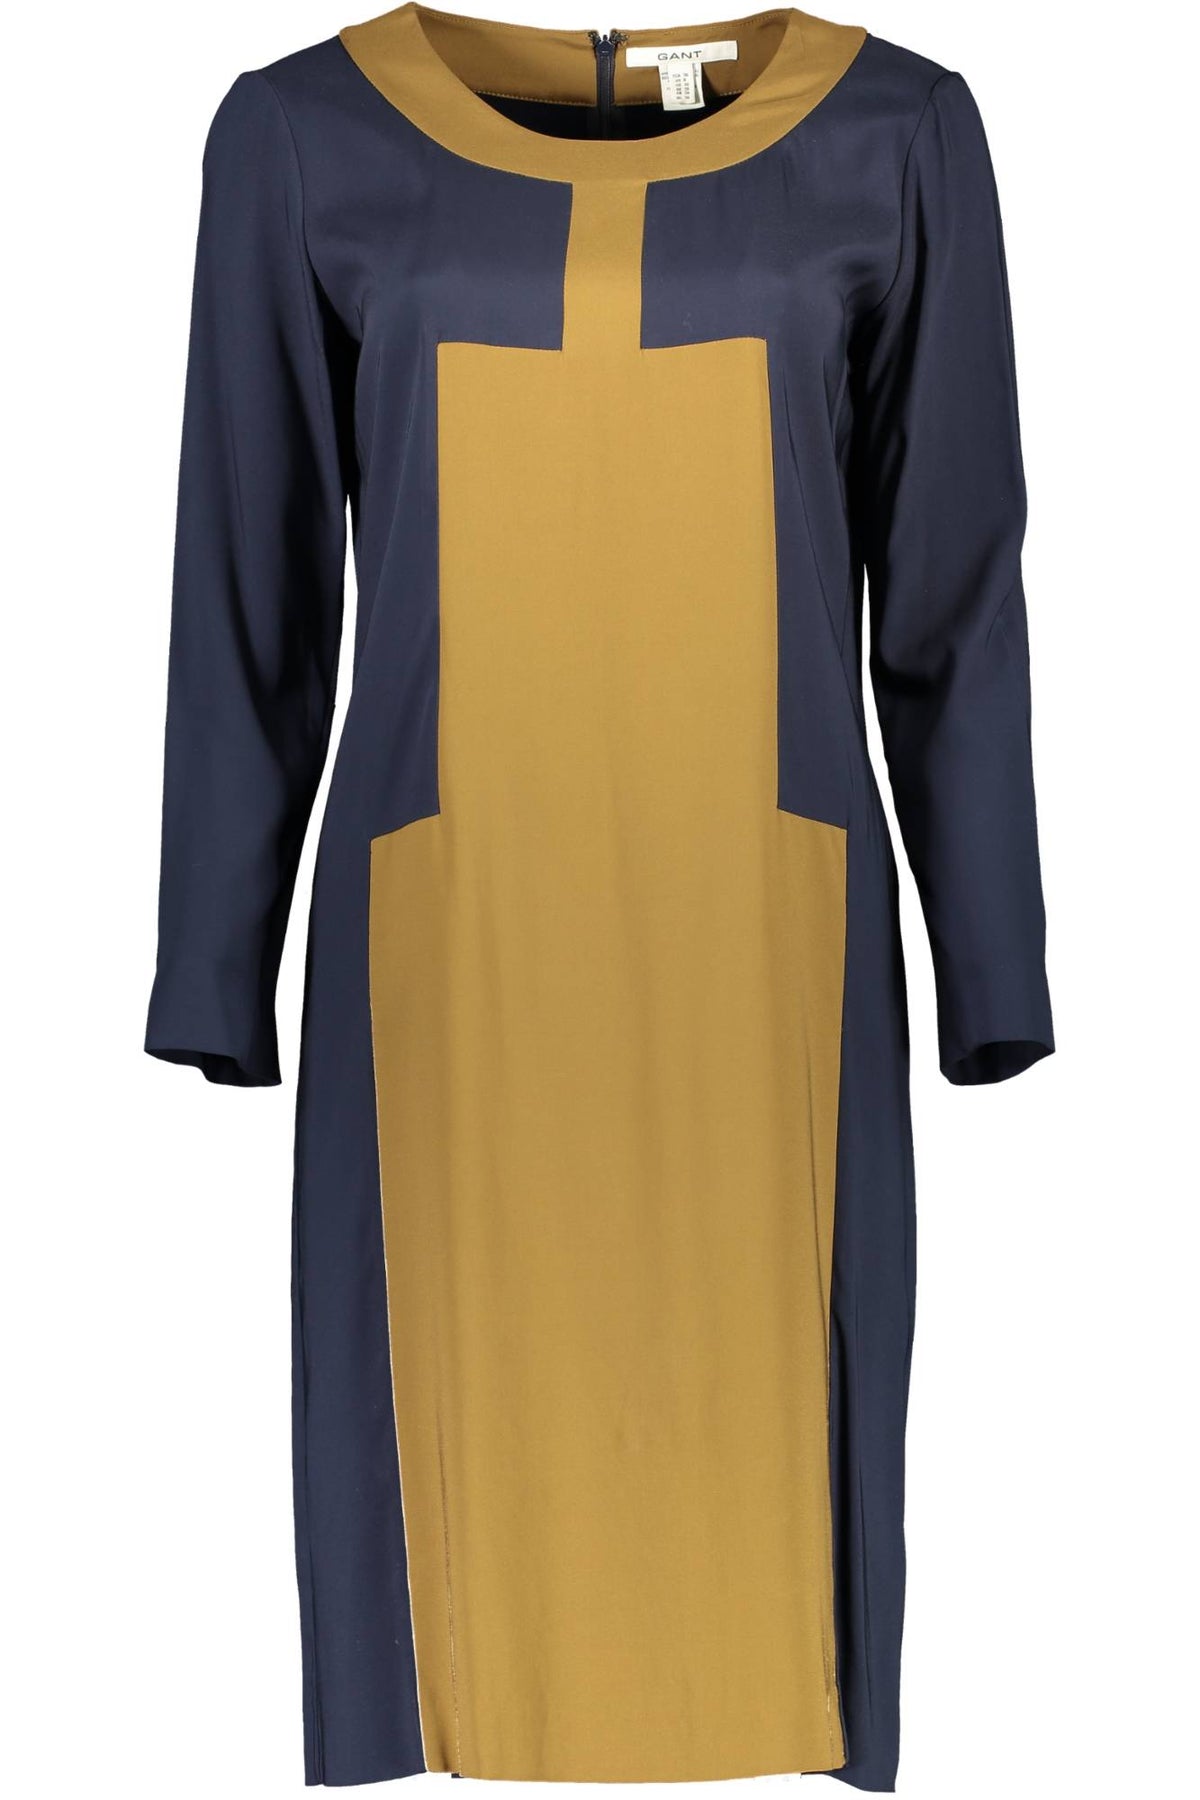 Gant Damen Kleid Freizeitkleid Abendkleid Markenkleid, Langarm